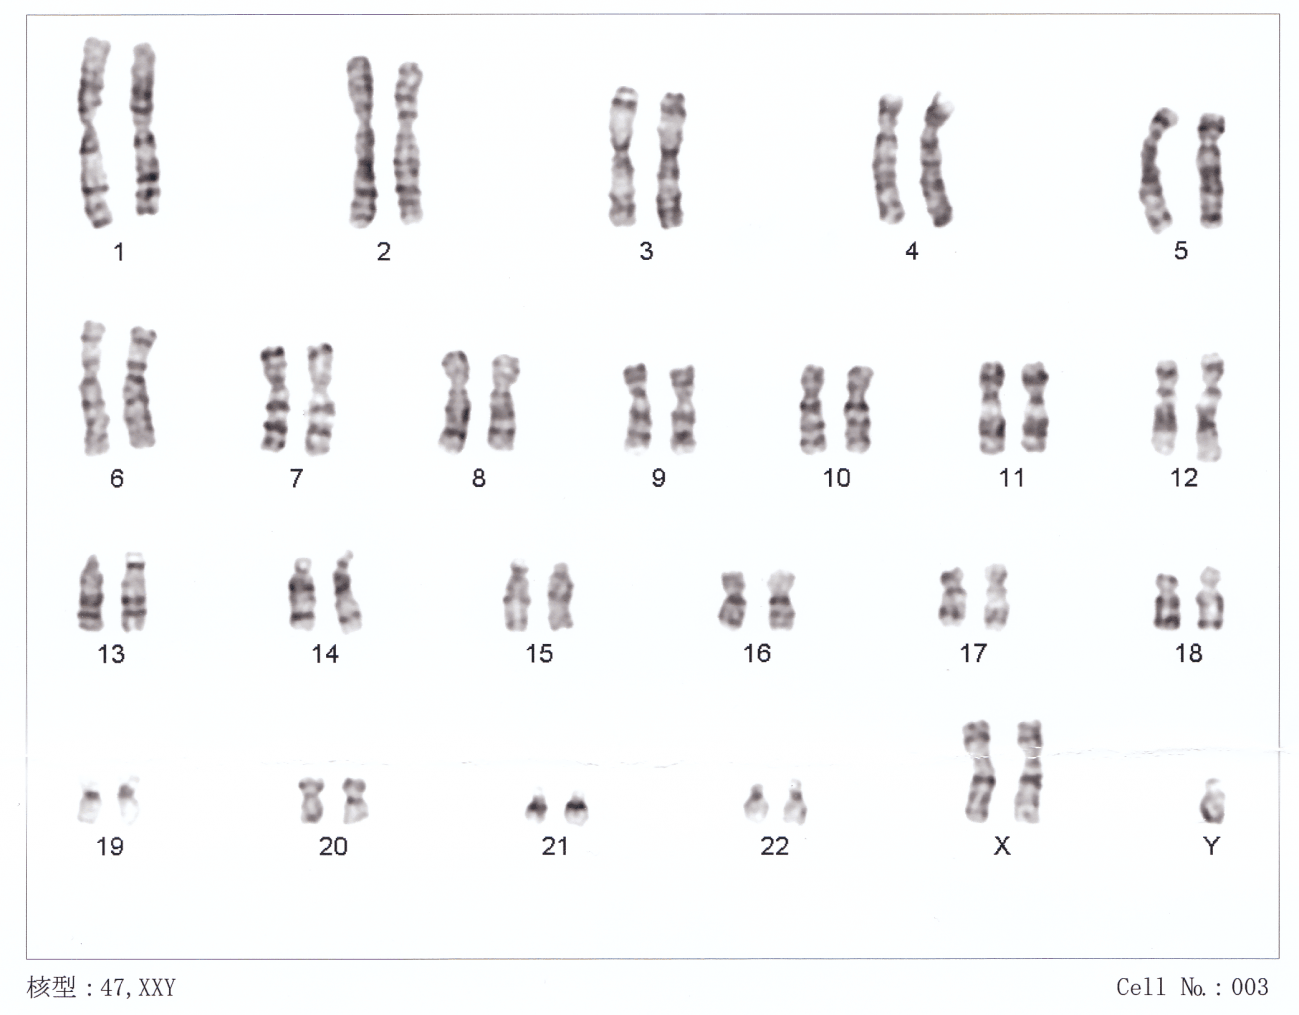 imagen de cromosomas humanos